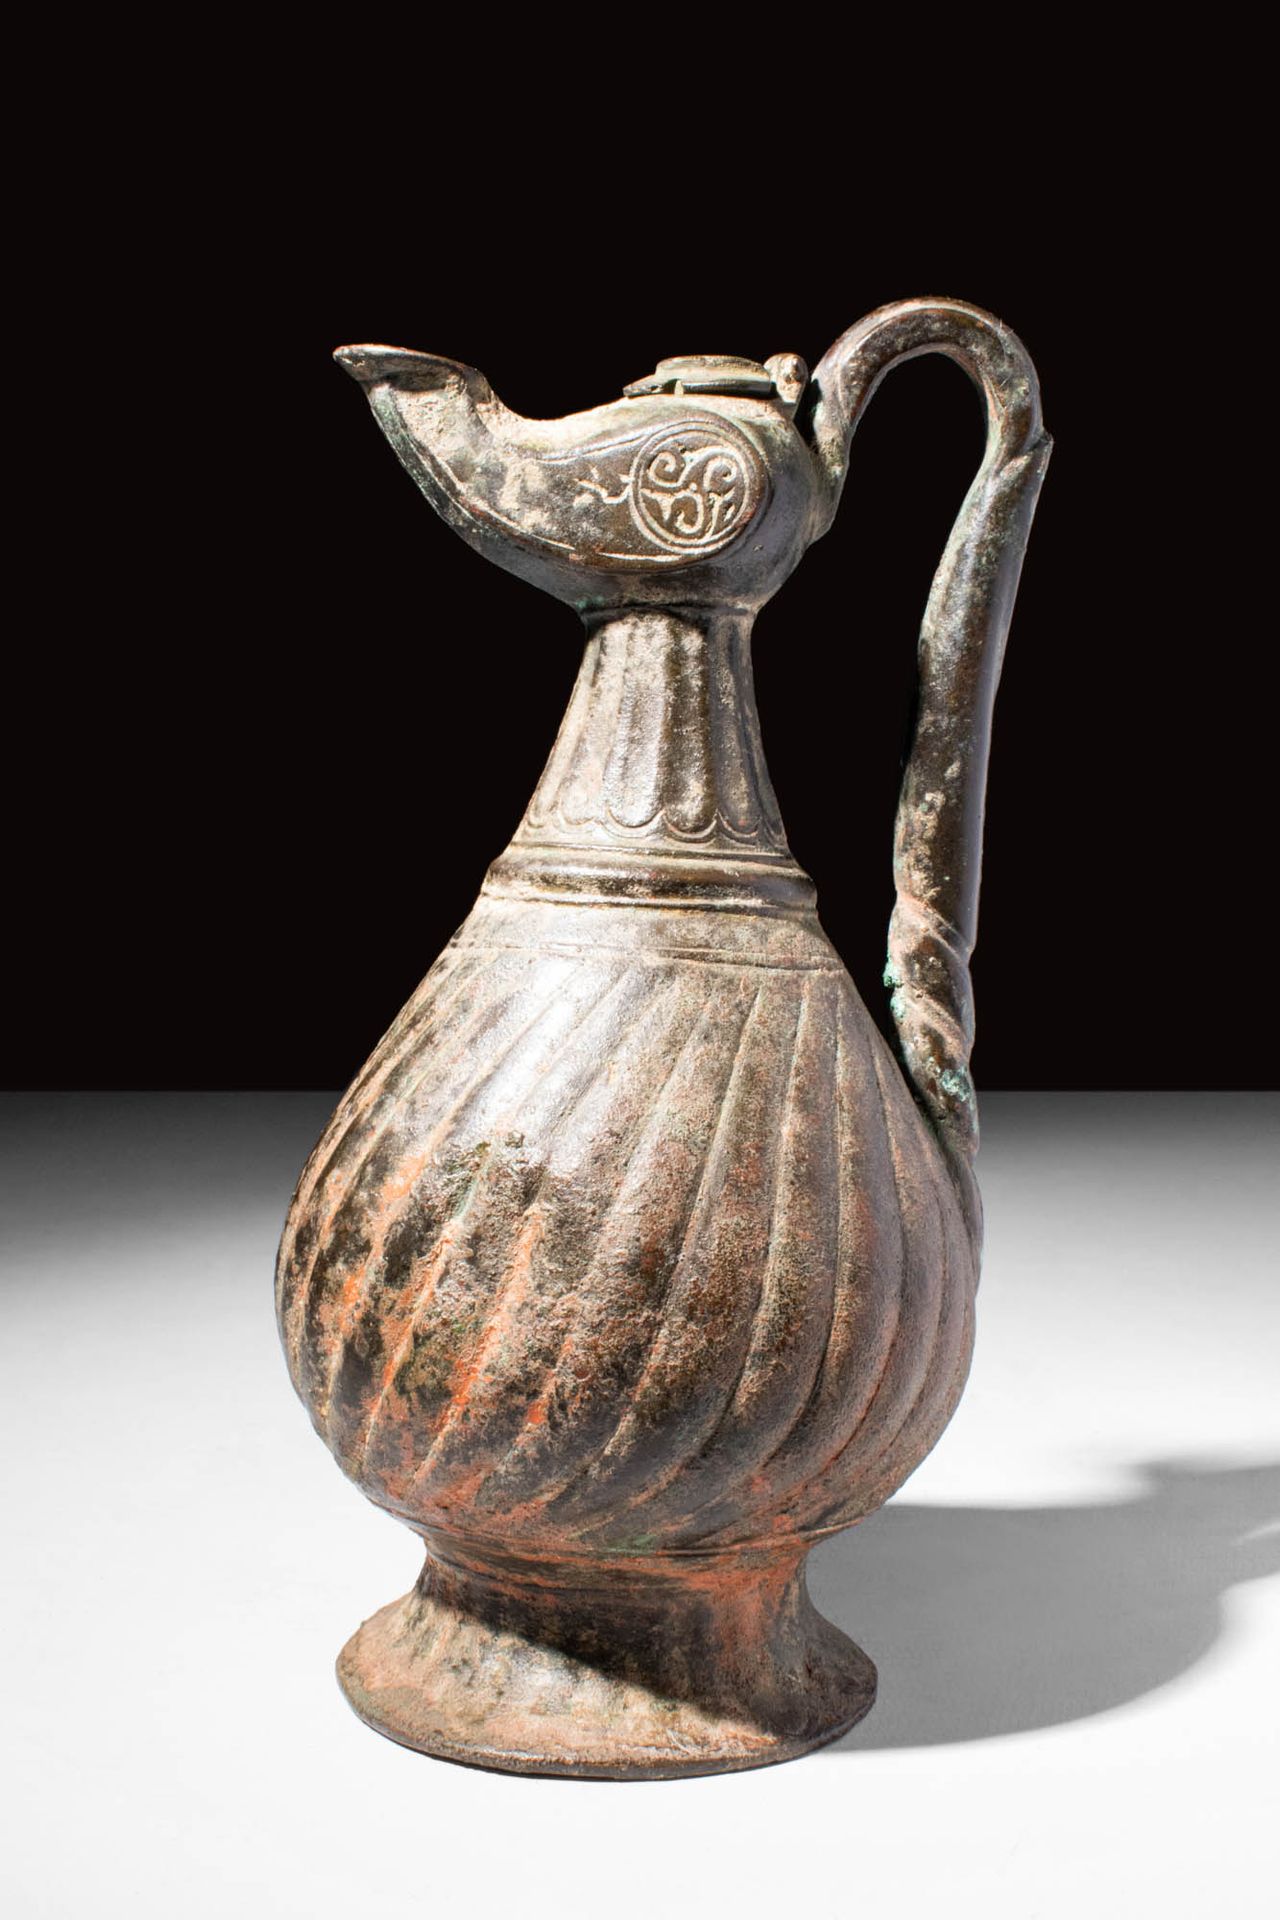 MEDIEVAL SELJUK BRONZE EWER Ca. AD 900 - 1100.
An Medieval Seljuk bronze ewer de&hellip;